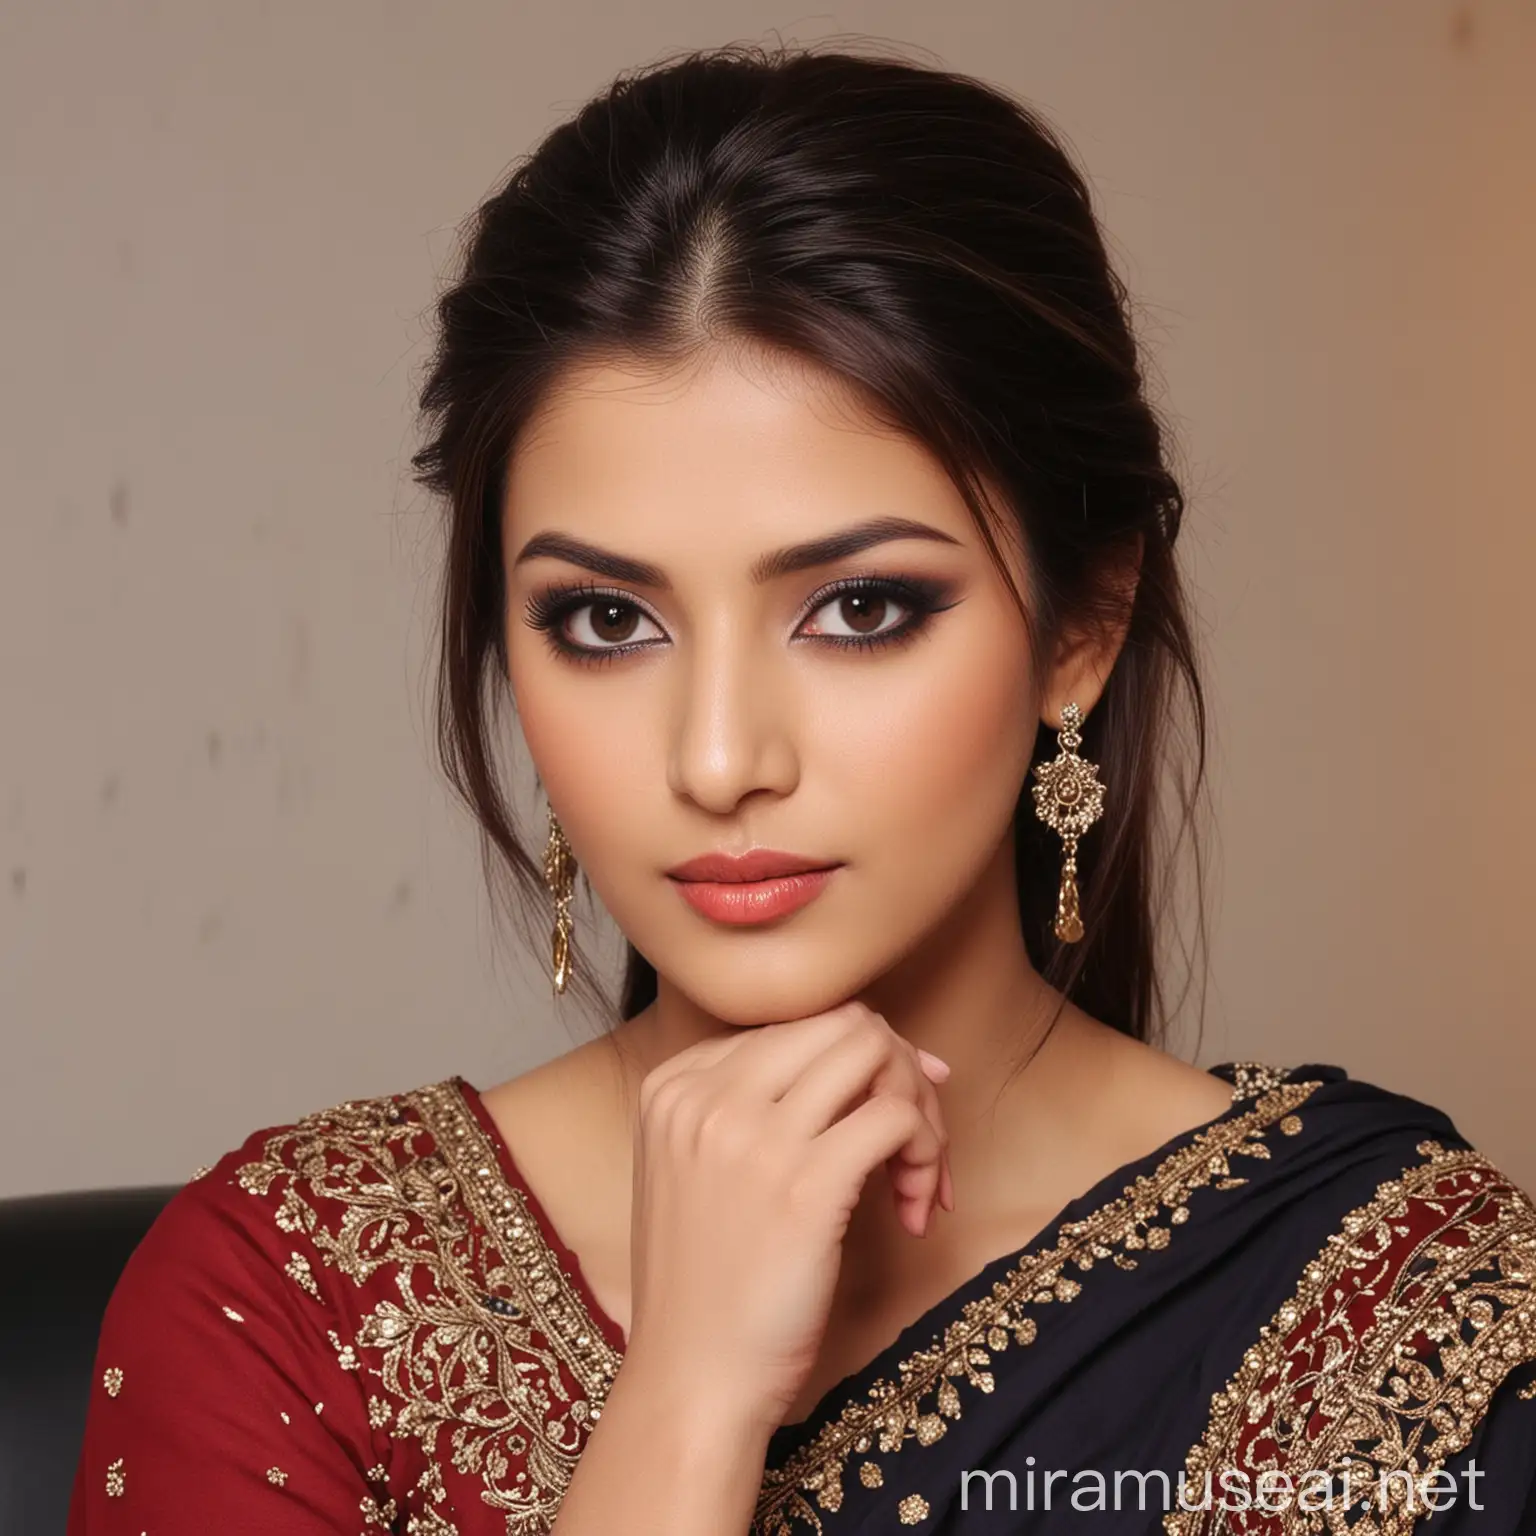 Beautiful Pakistani Girl Poses as News Anchor with Indian Model Makeup